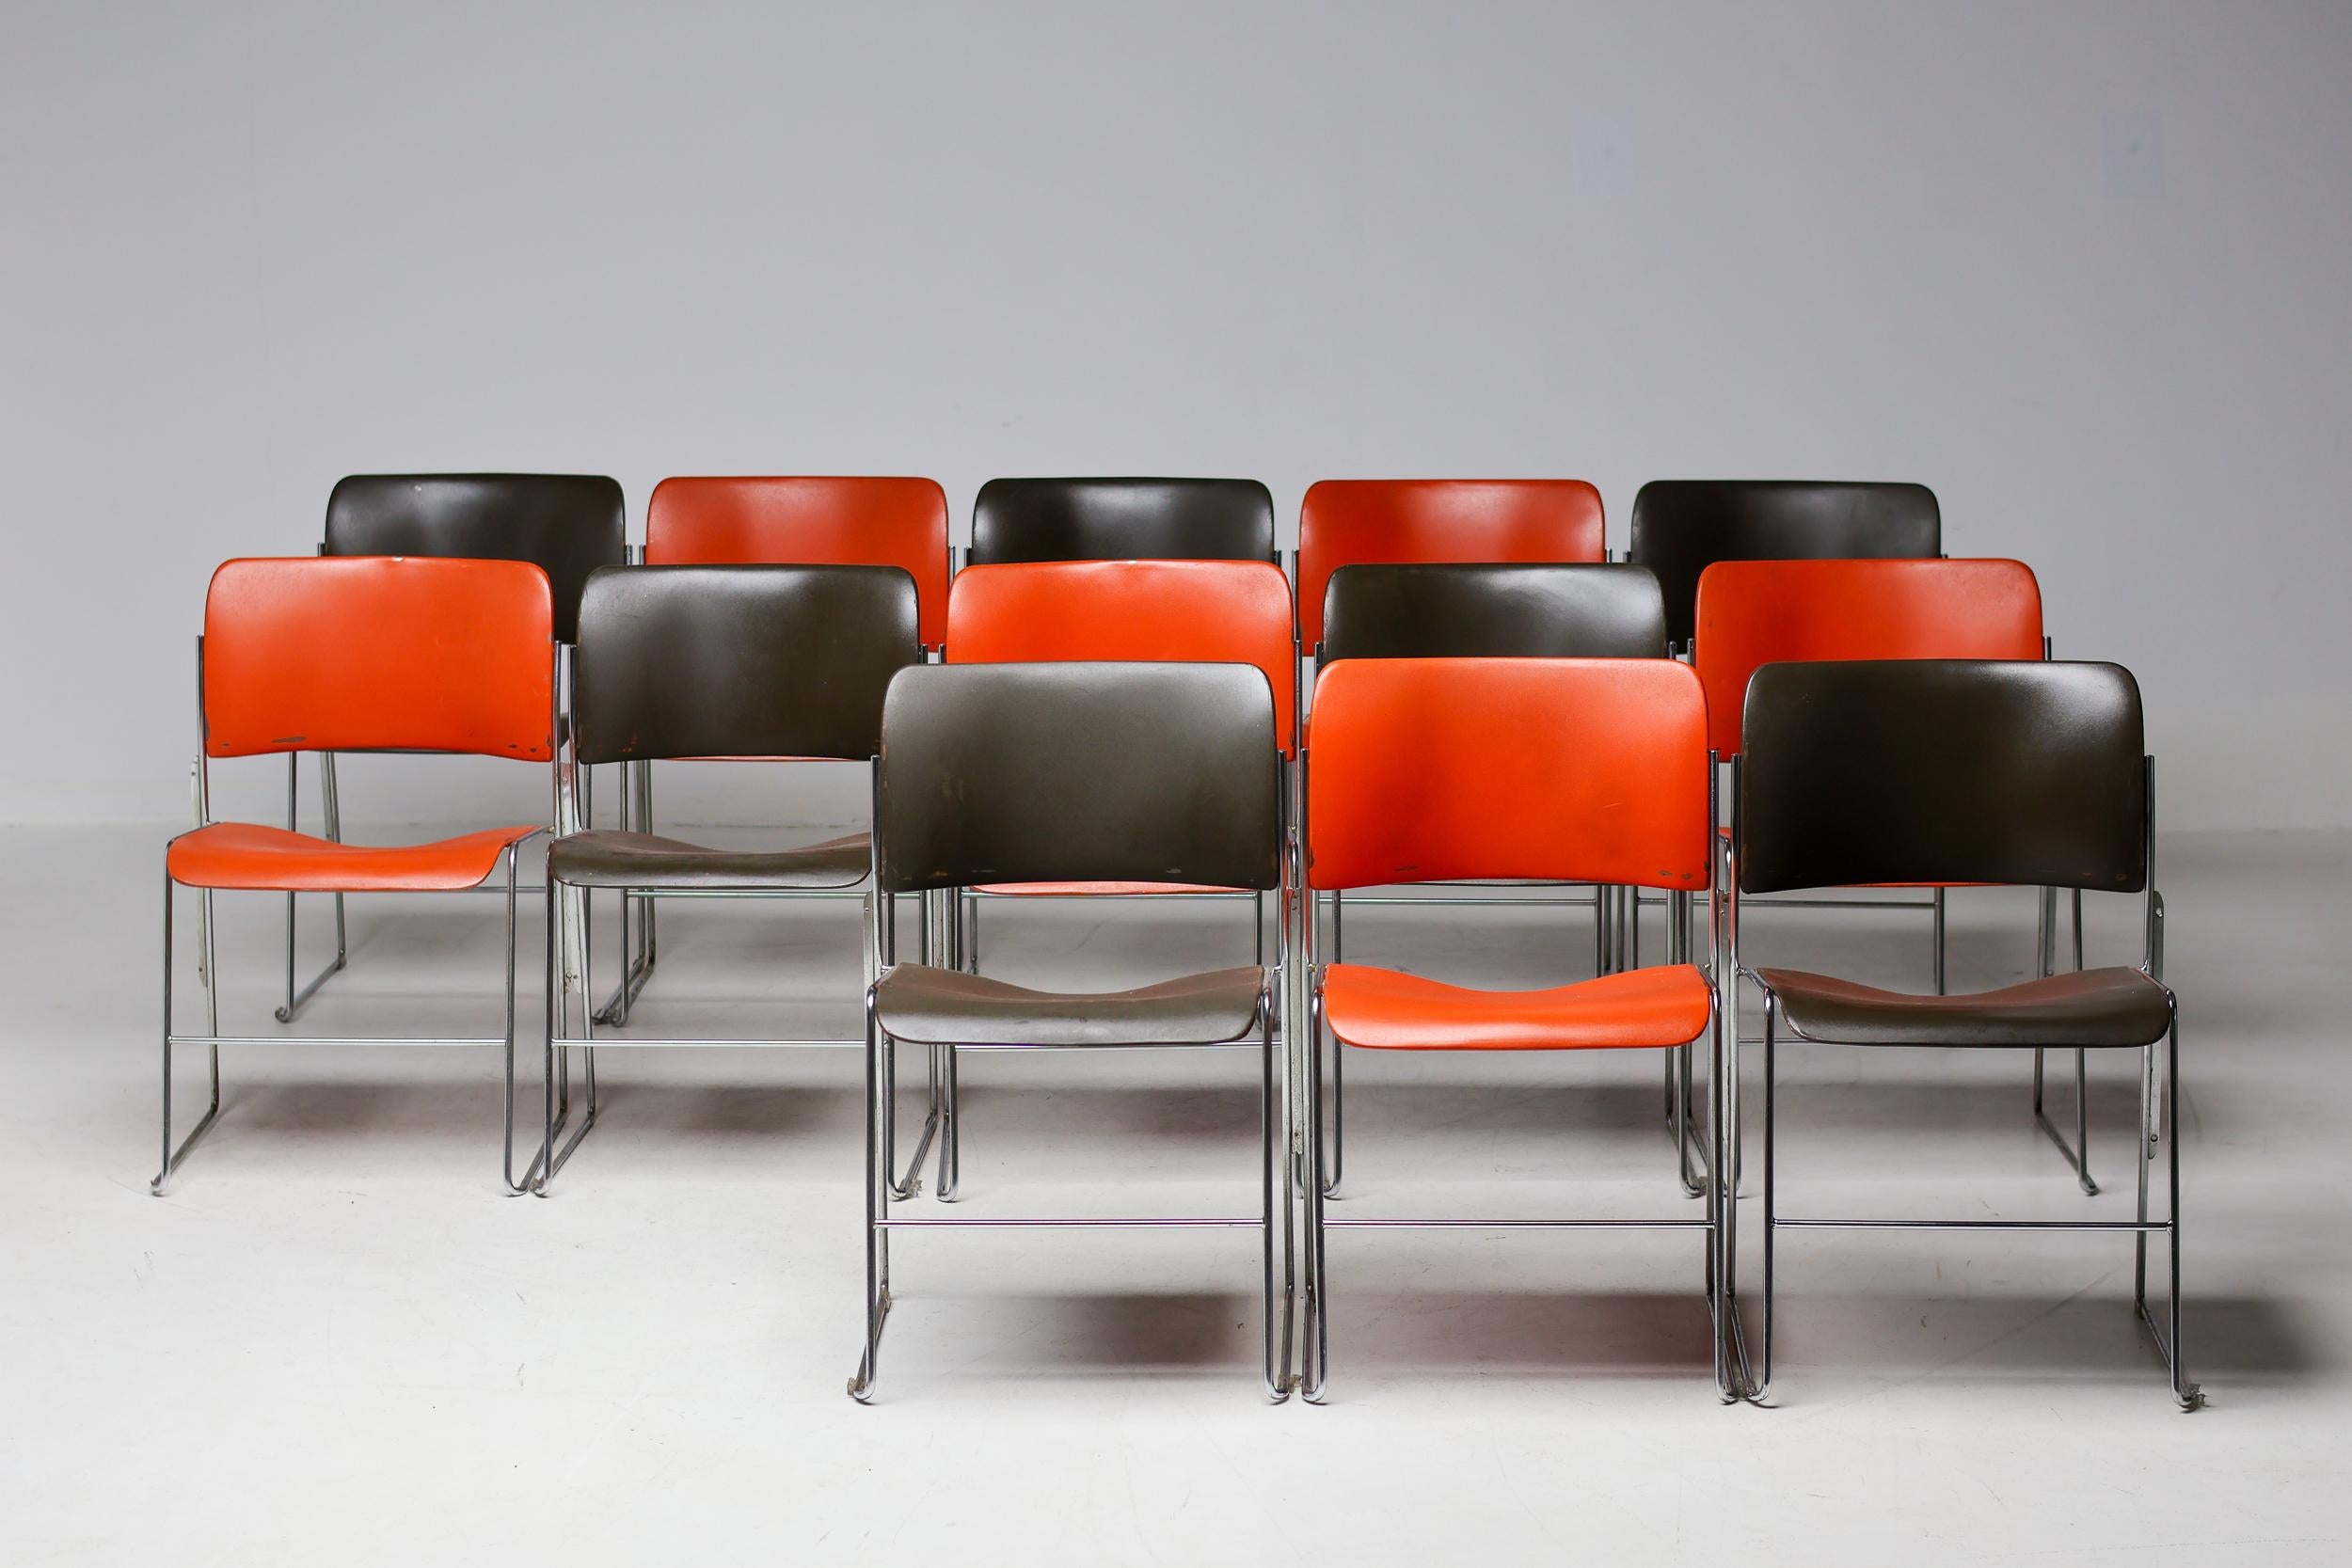 La chaise 40/4, un chef-d'œuvre intemporel conçu par David Rowland et fabriqué par le fabricant d'origine Office Furniture Systems. Il s'agit d'exemplaires originaux des années 1970 en bon état.
Nous avons un total de 52 chaises disponibles en brun